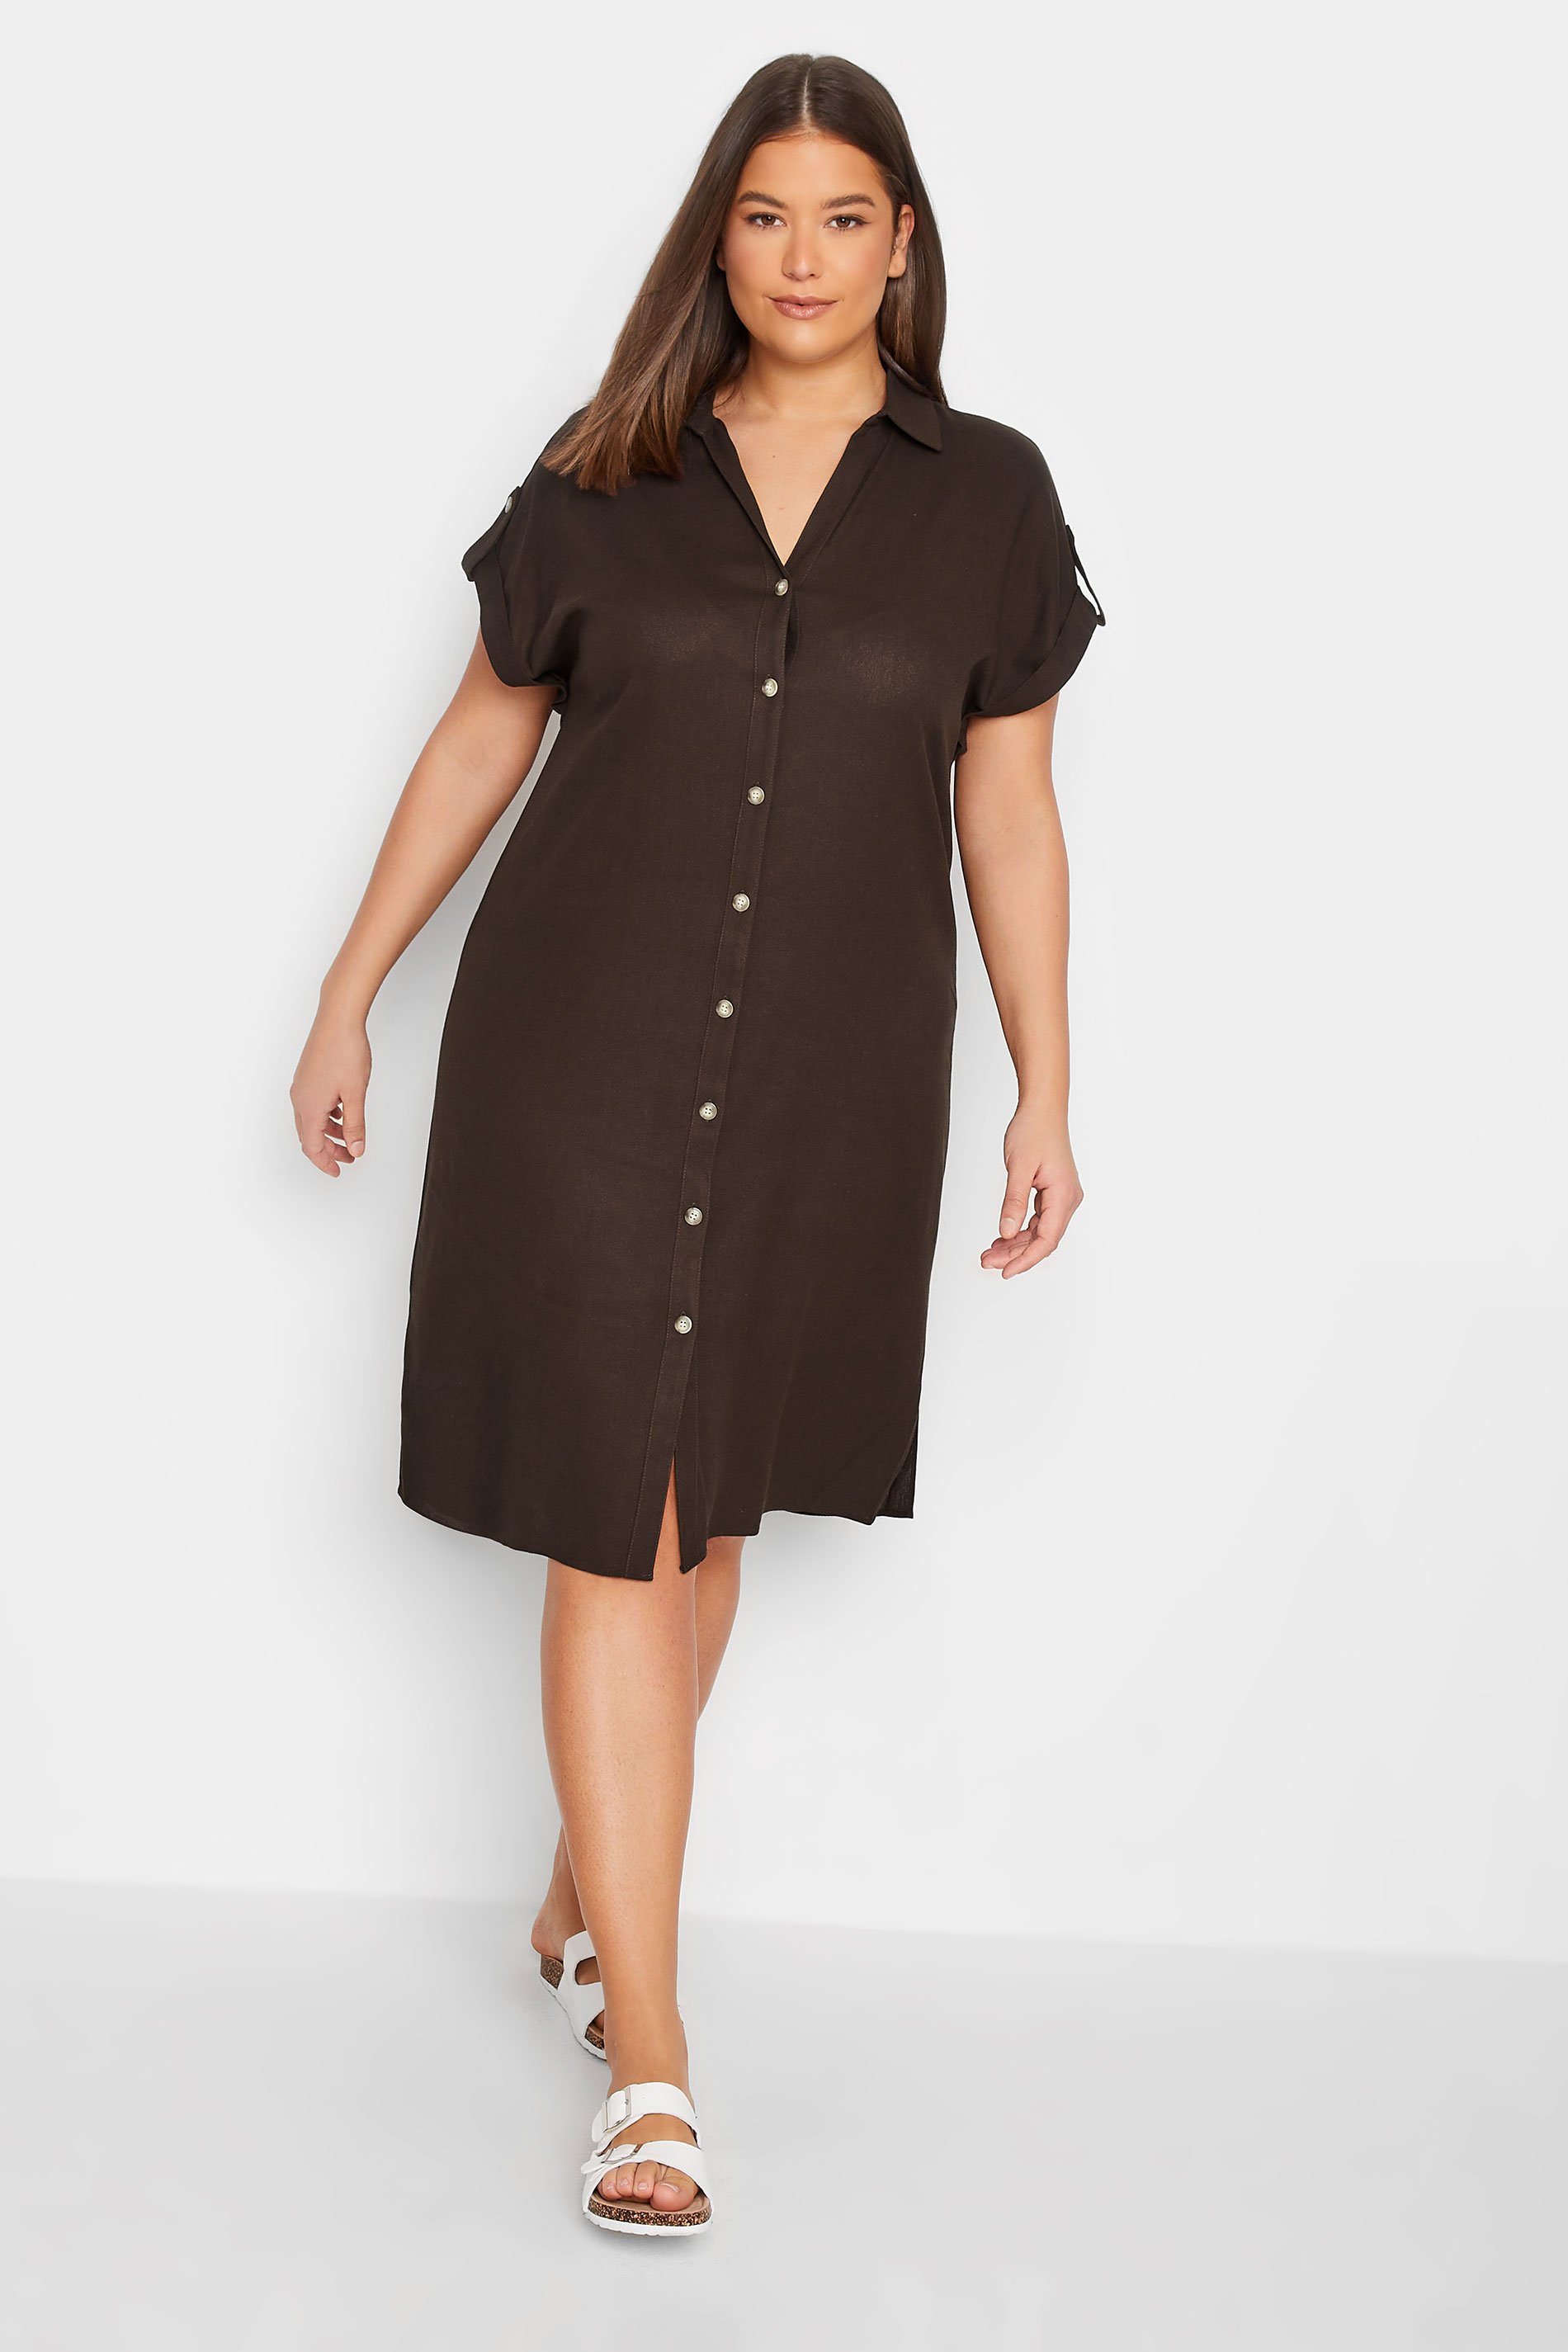 LTS Tall Women's Chocolate Brown Linen Look Dress | Long Tall Sally 2